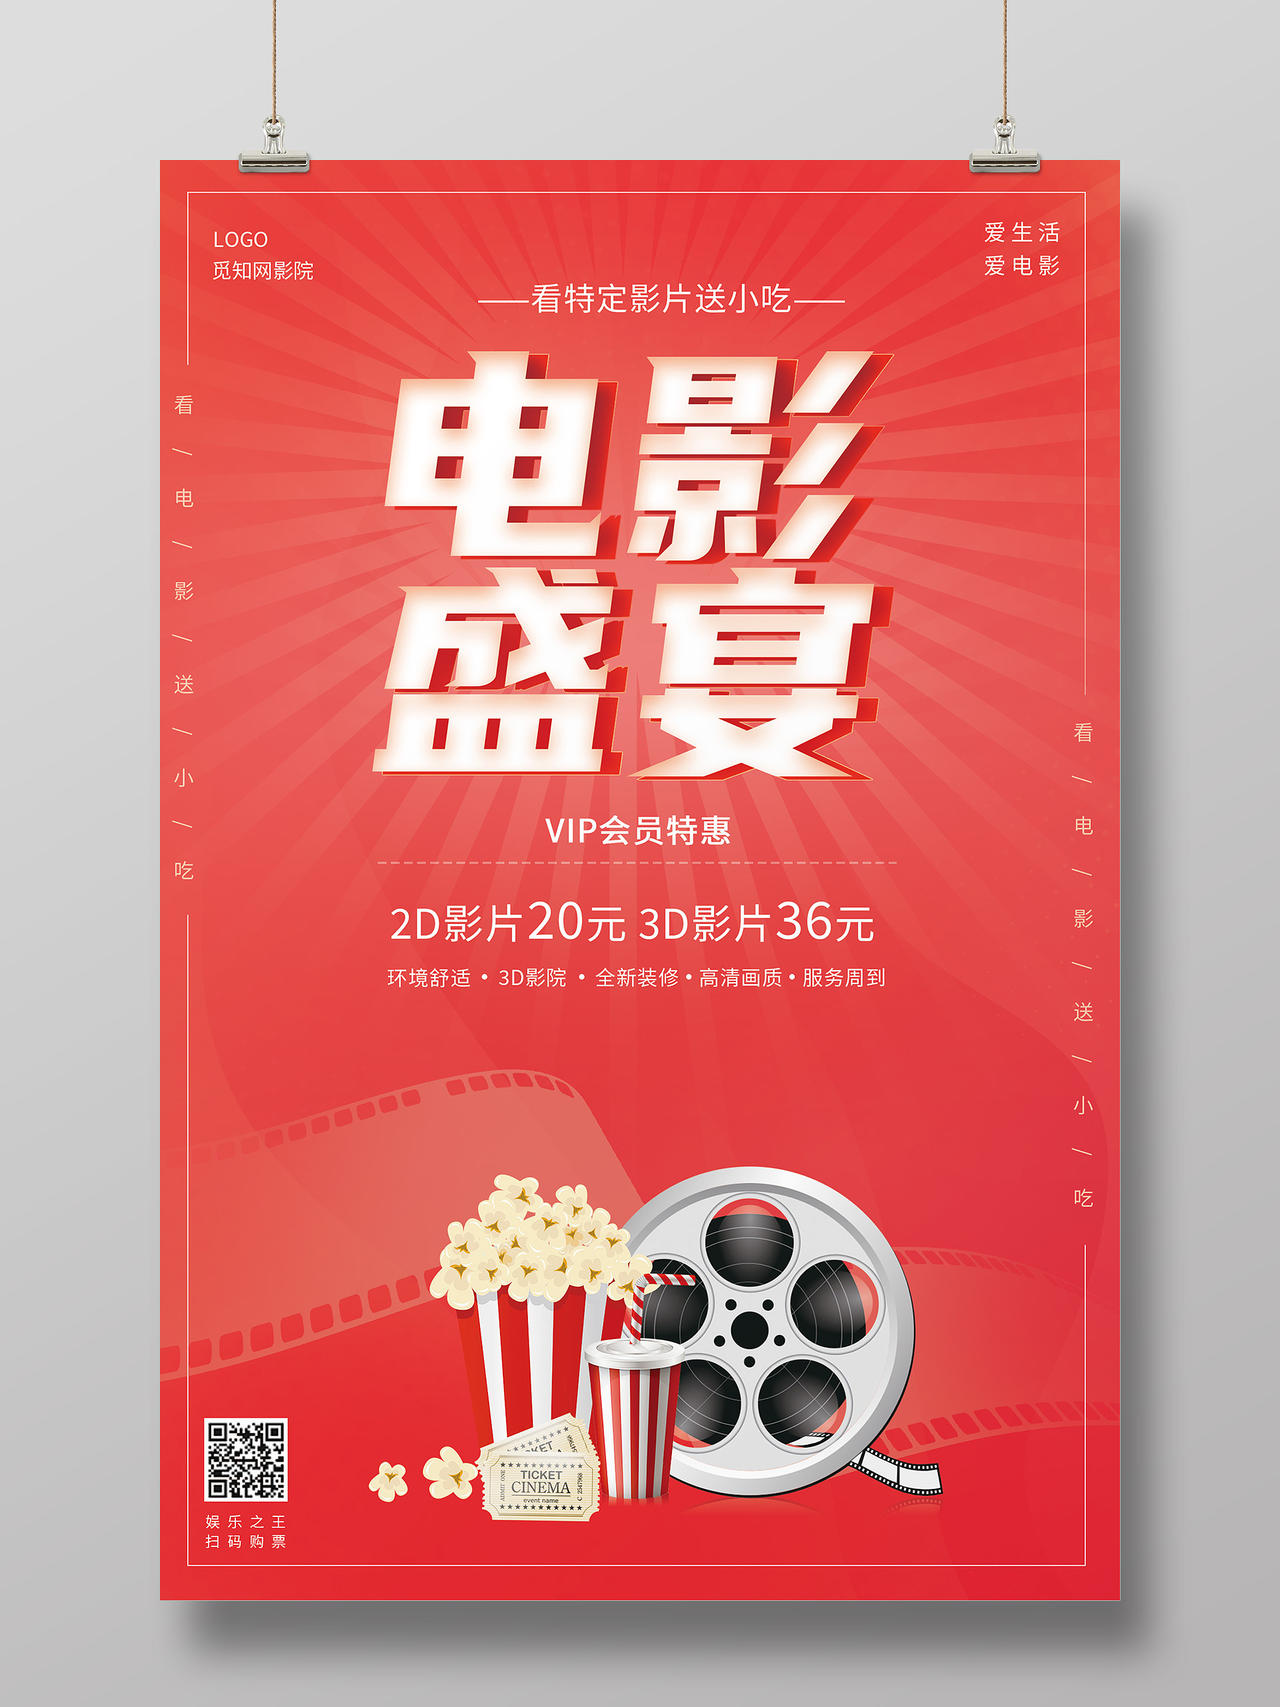 红色简约风格电影盛宴宣传促销海报模板